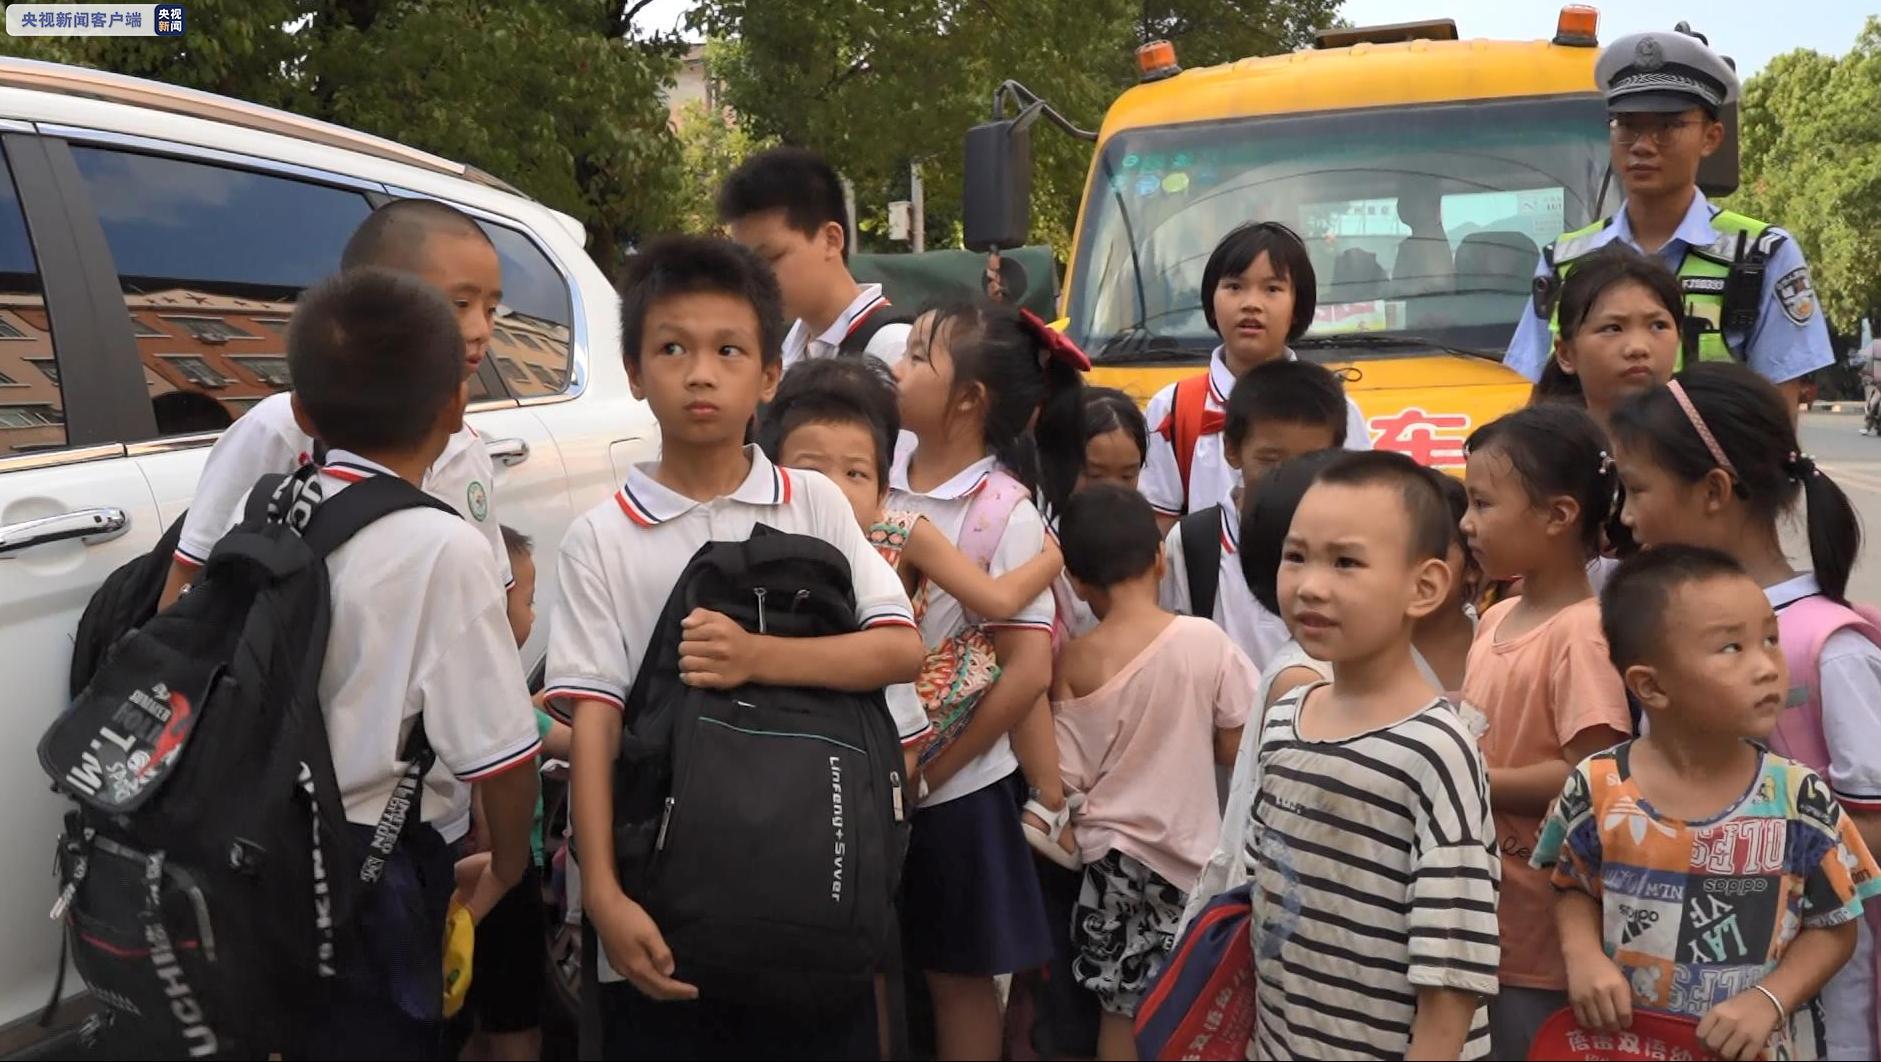 广西泉州一面包车被挤成校车 24名幼童和小学生被塞进车内接受调查